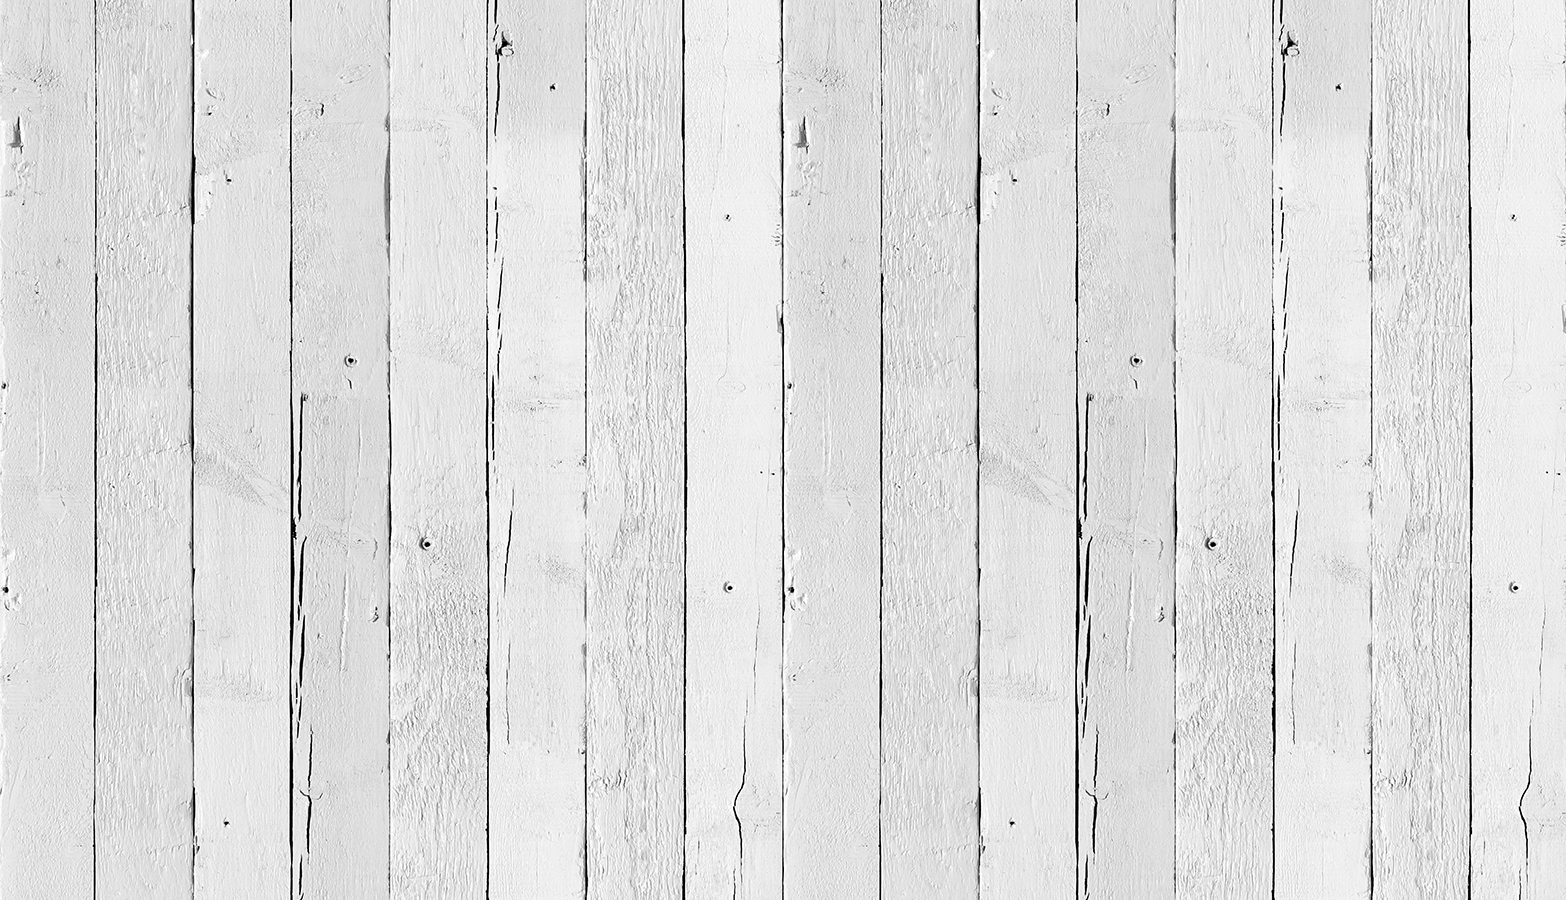 carta da parati in legno bianco,legna,tavola,linea,color legno,modello